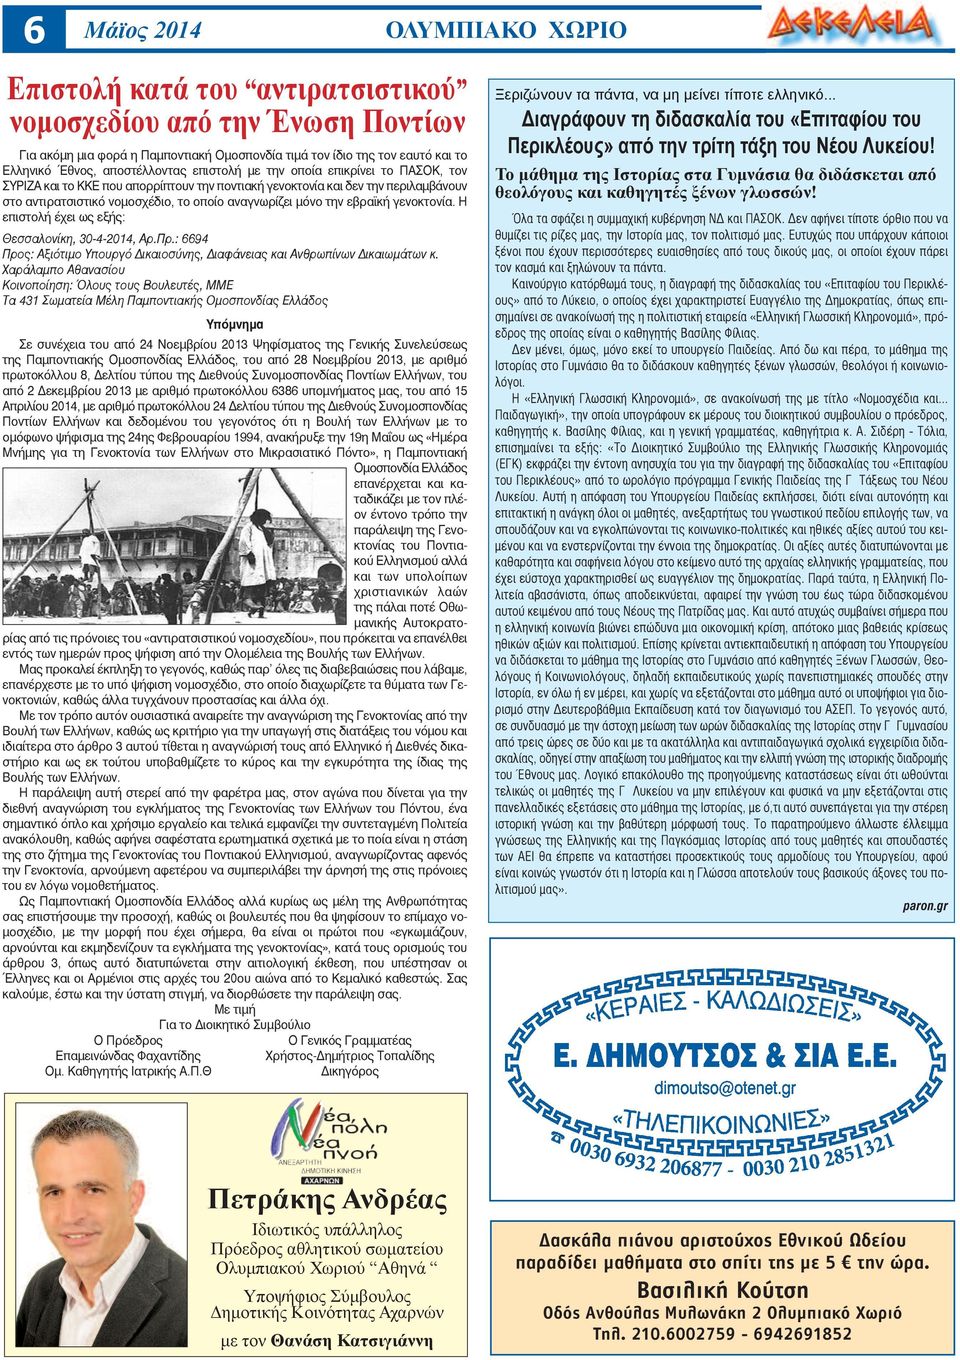 Η επιστολή έχει ως εξής: Θεσσαλονίκη, 30-4-2014, Αρ.Πρ.: 6694 Προς: Αξιότιμο Υπουργό Δικαιοσύνης, Διαφάνειας και Ανθρωπίνων Δικαιωμάτων κ.